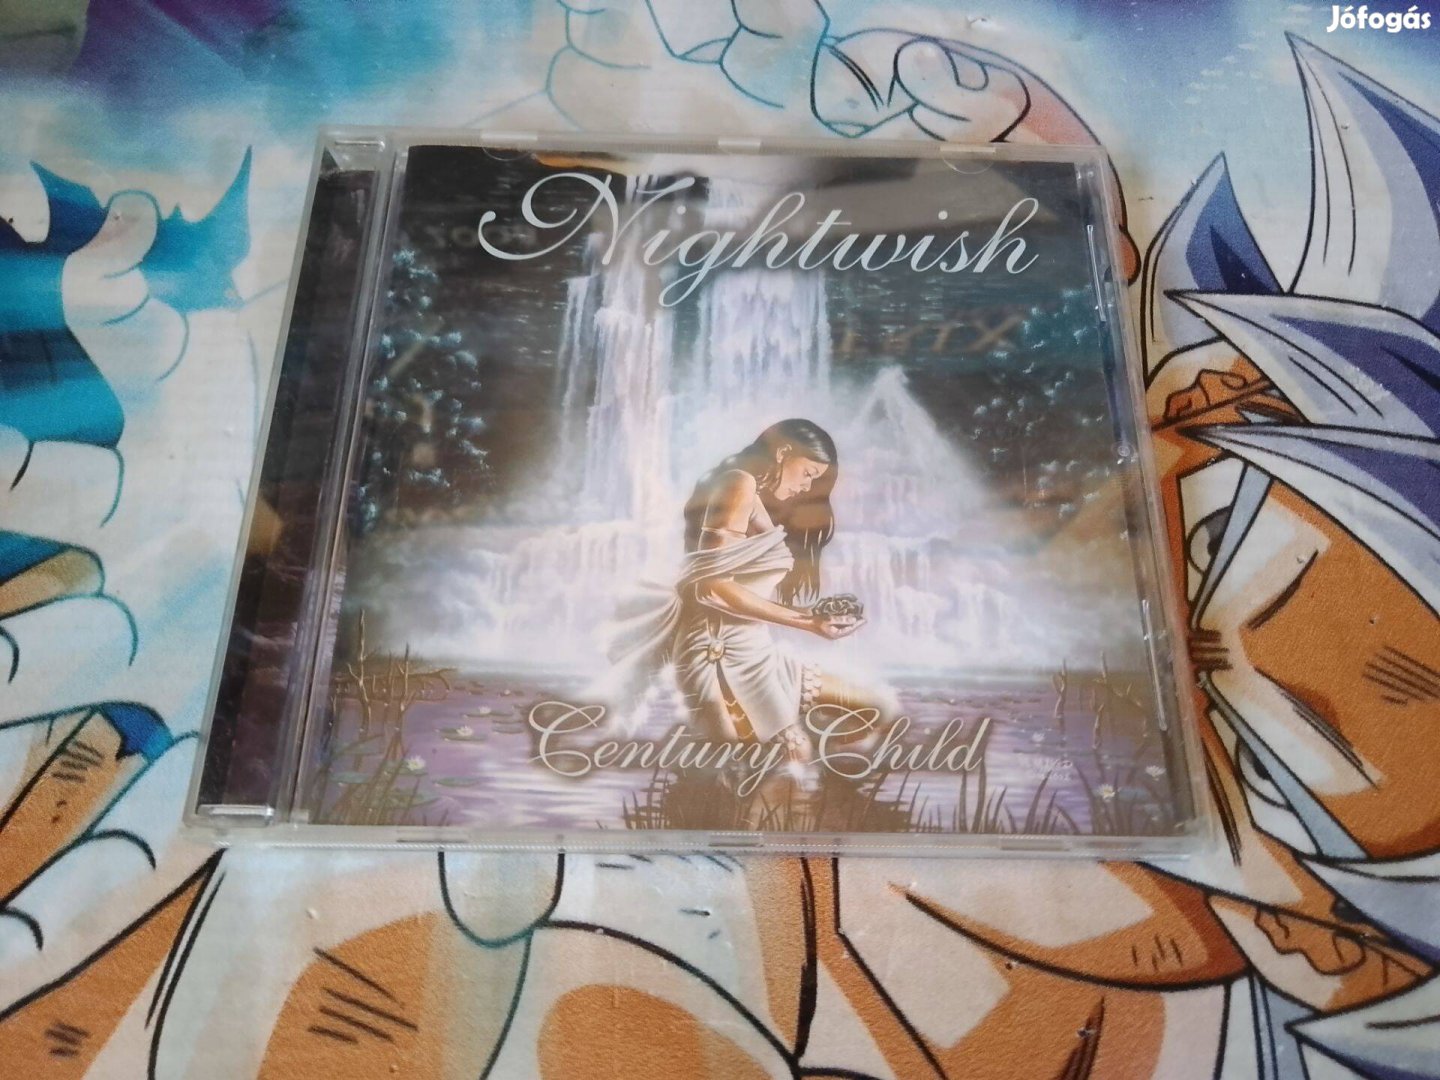 Nightwish - Century Child CD